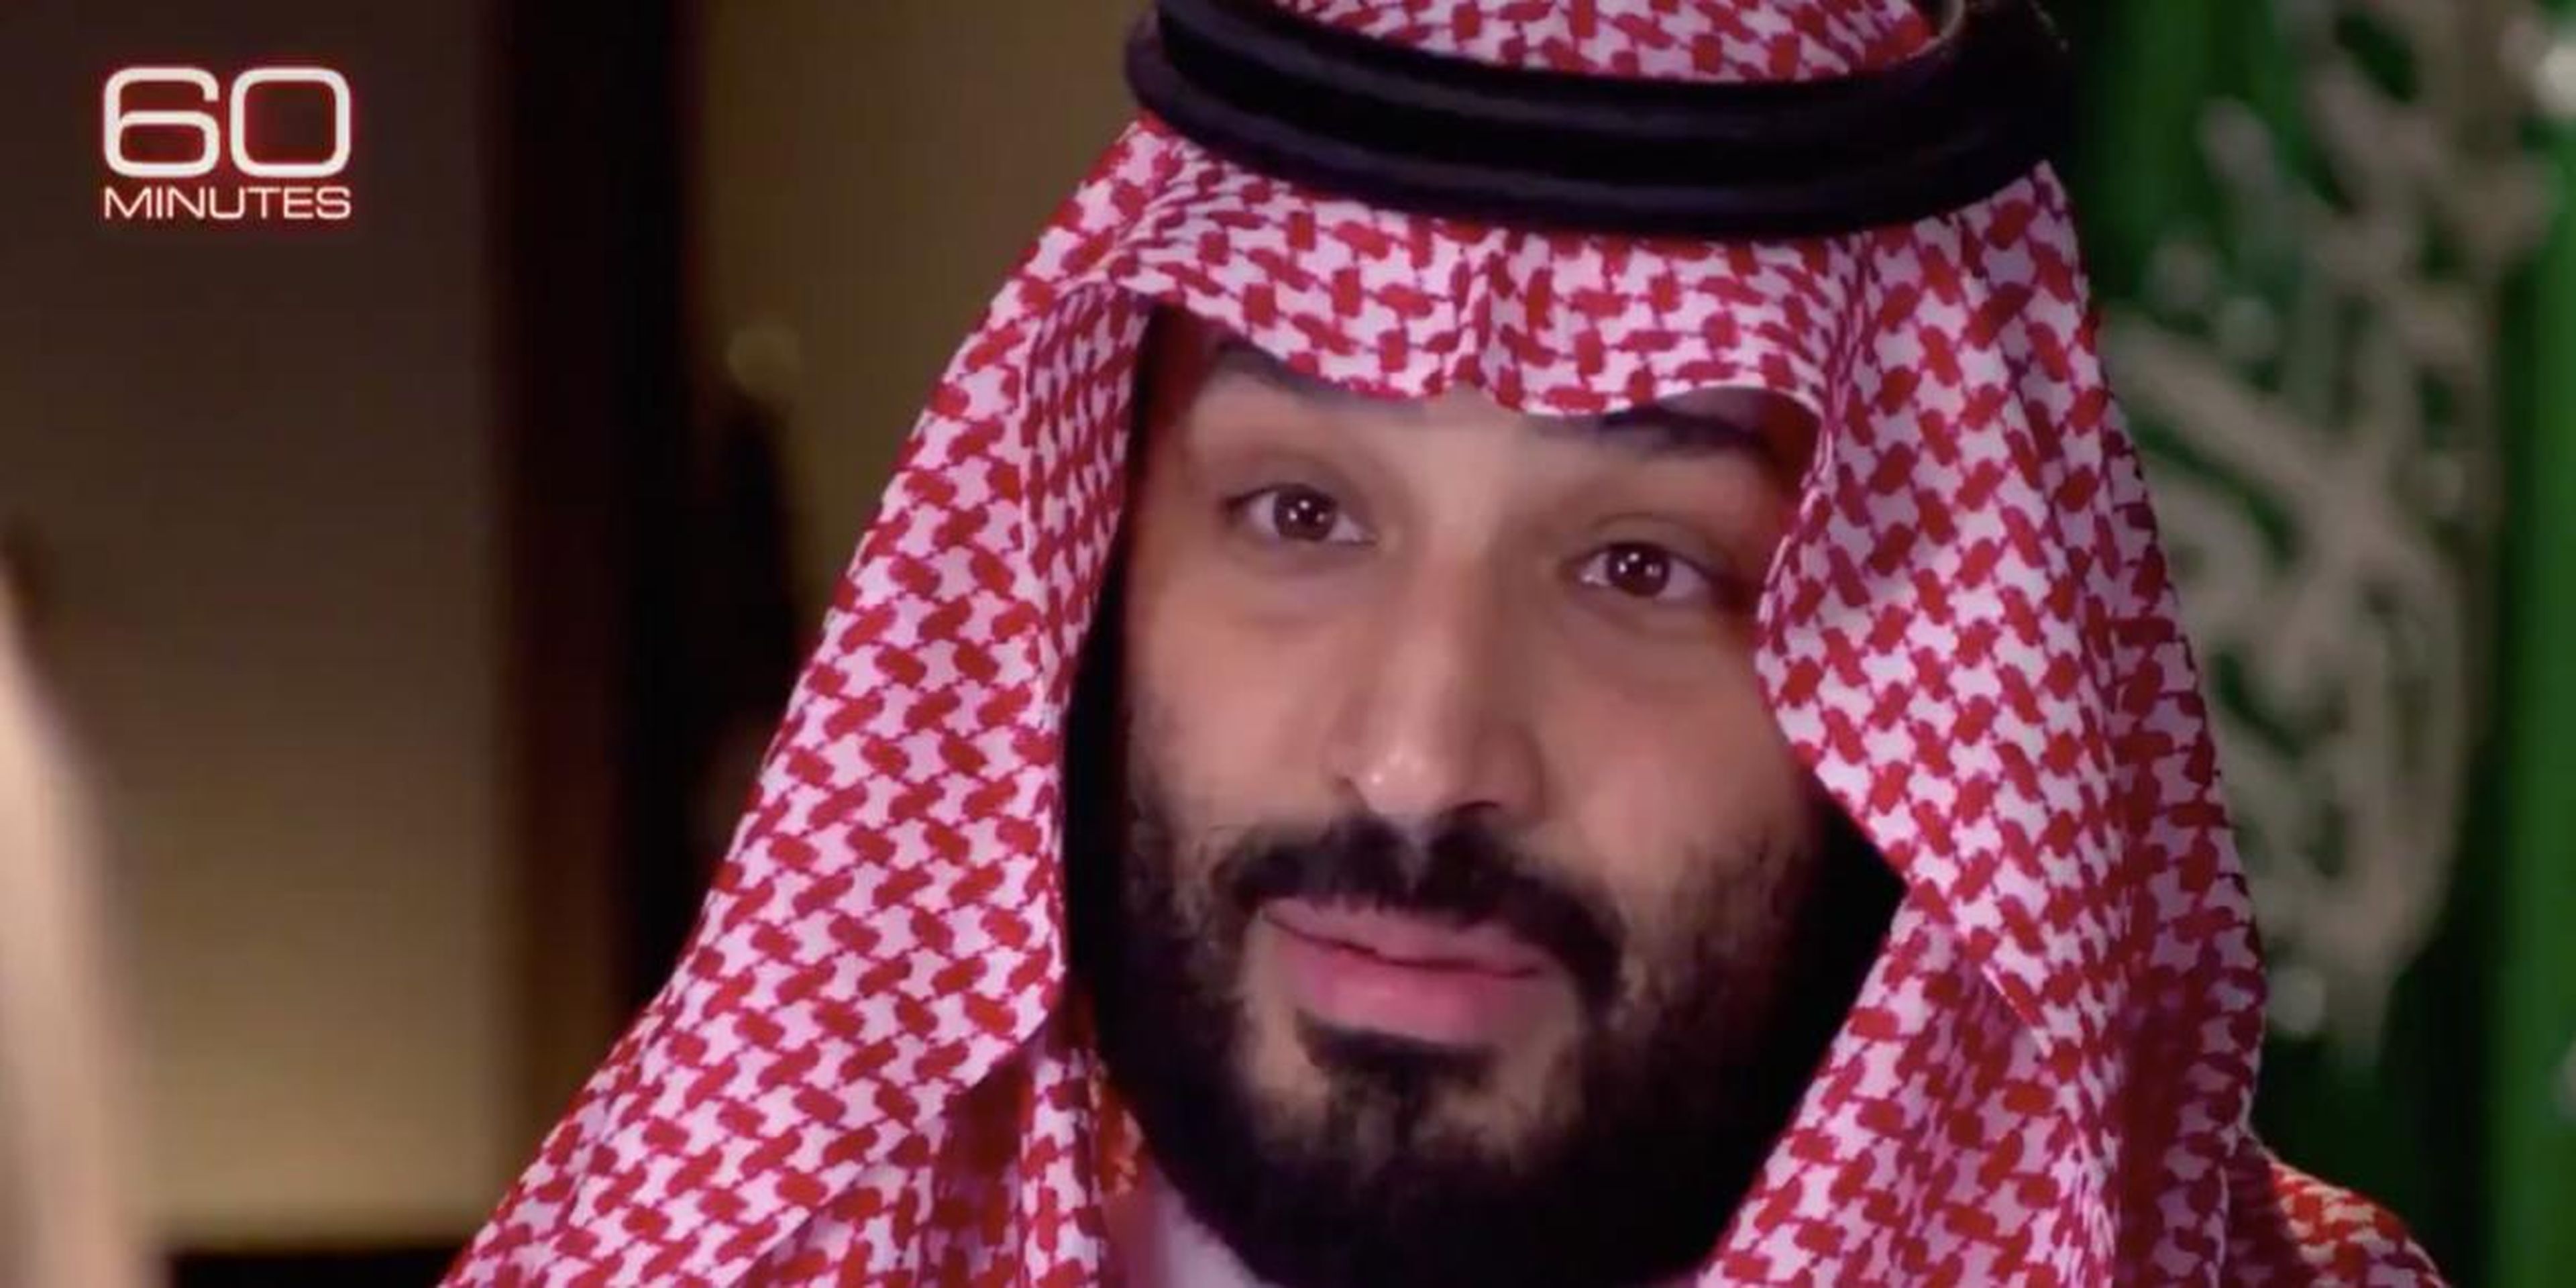 El príncipe heredero saudí Mohammed bin Salman dijo el domingo por la noche en "60 minutos" que asume "toda la responsabilidad" por el asesinato del periodista Jamal Khashoggi.